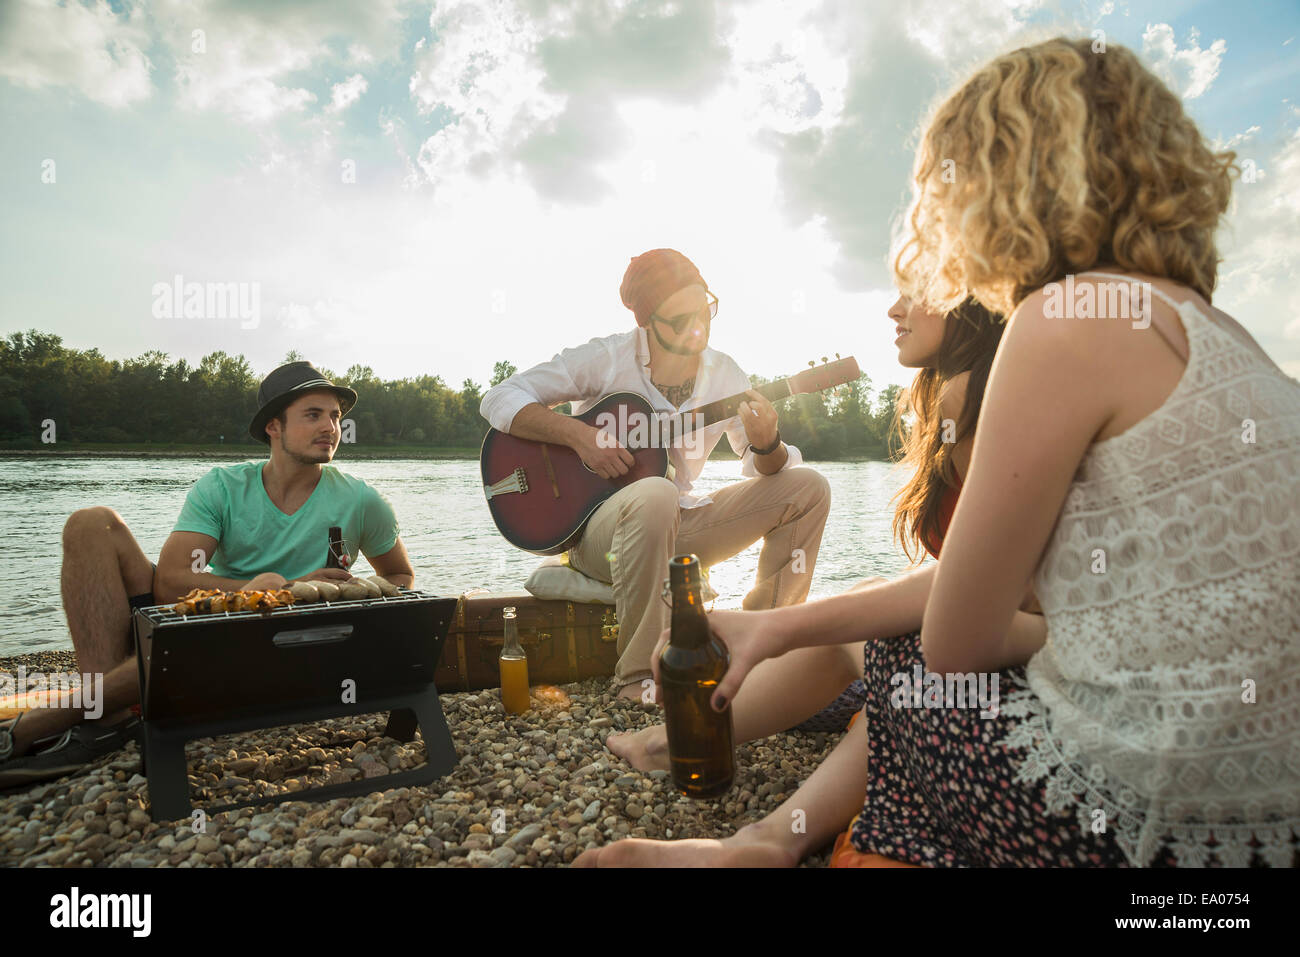 Joven sentada por el lago con amigos tocando la guitarra Foto de stock